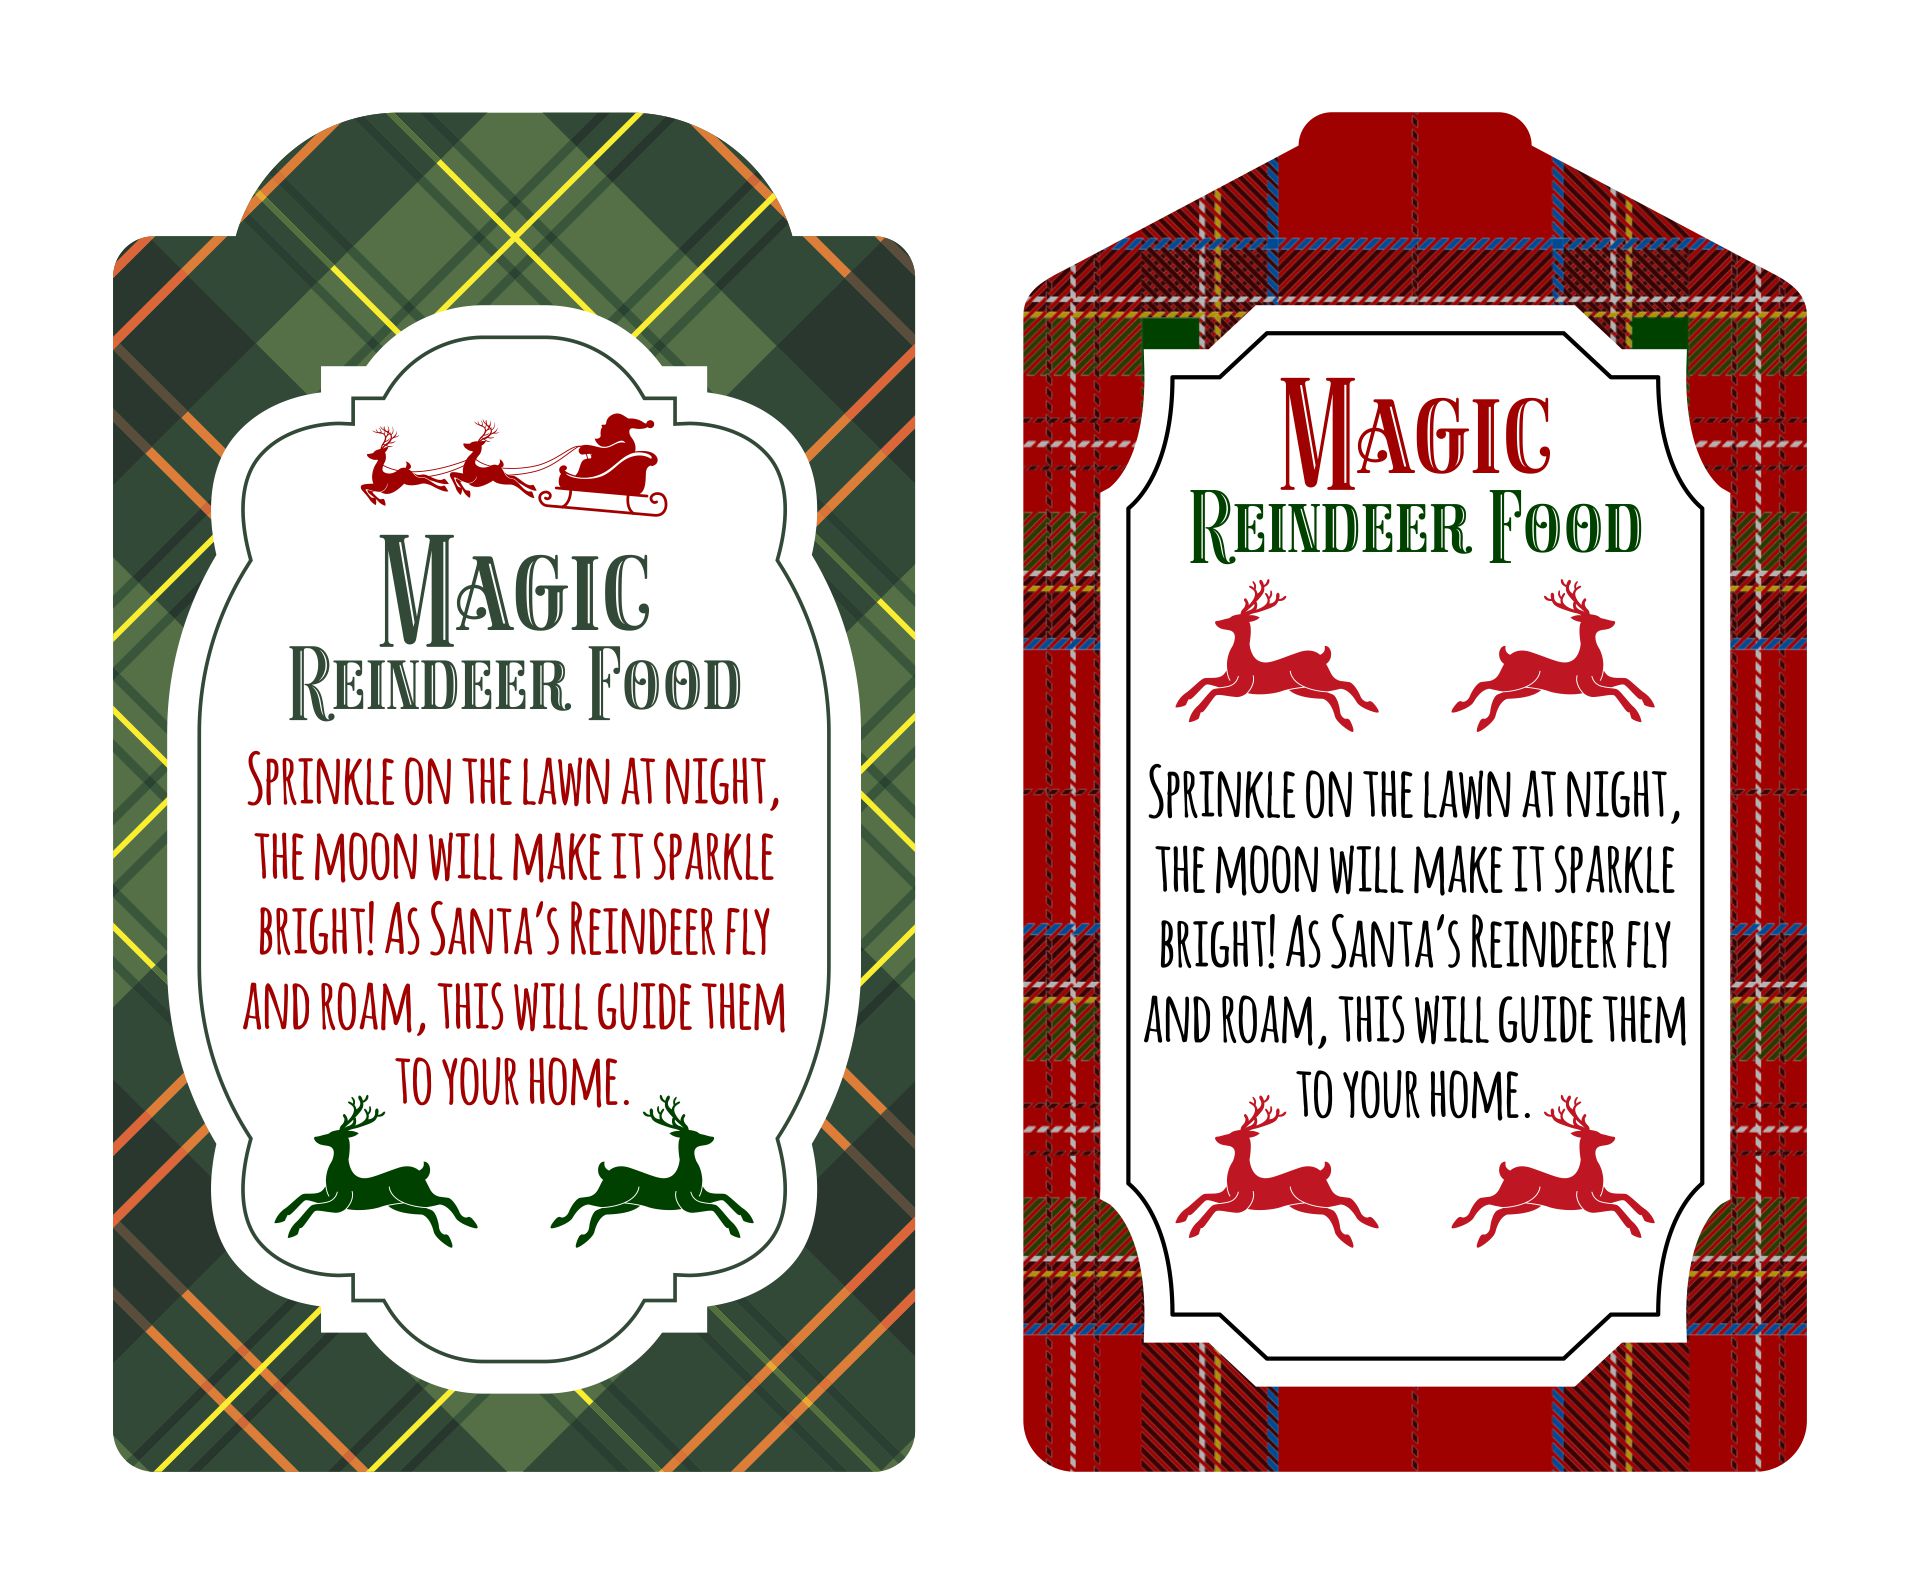 6 Best Images of Free Printable Magic Reindeer Food Magic Reindeer